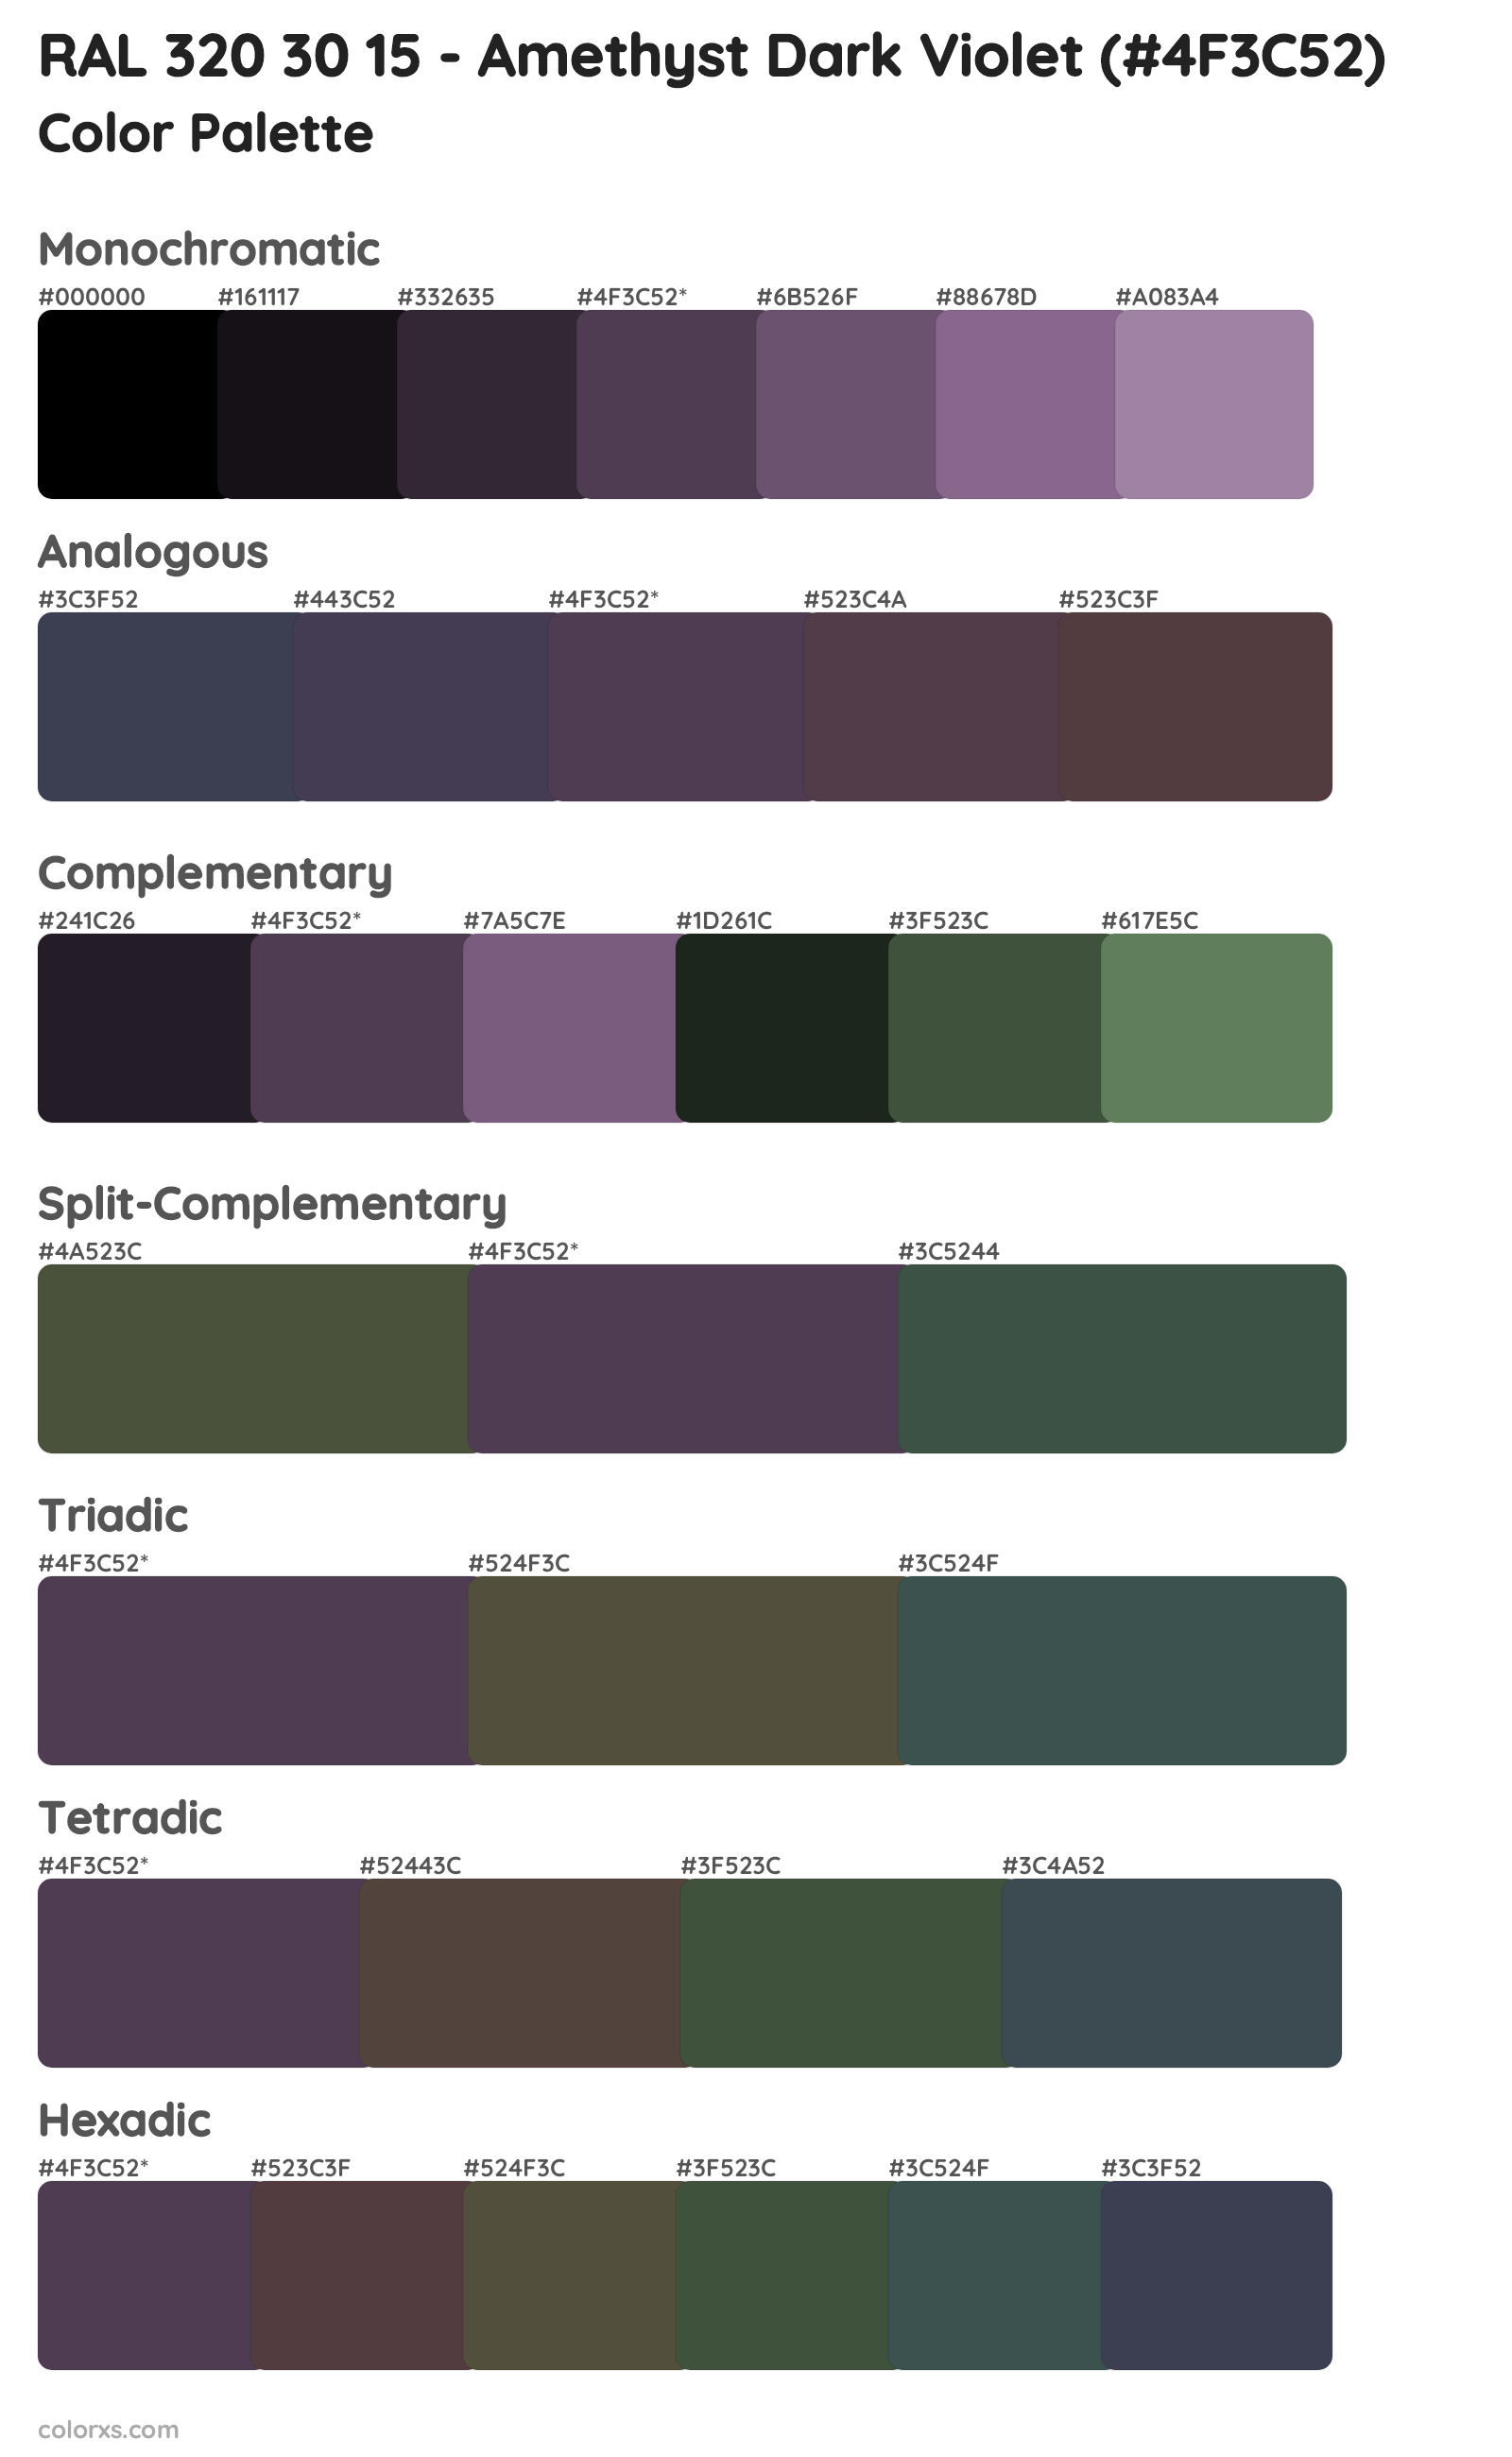 RAL 320 30 15 - Amethyst Dark Violet Color Scheme Palettes